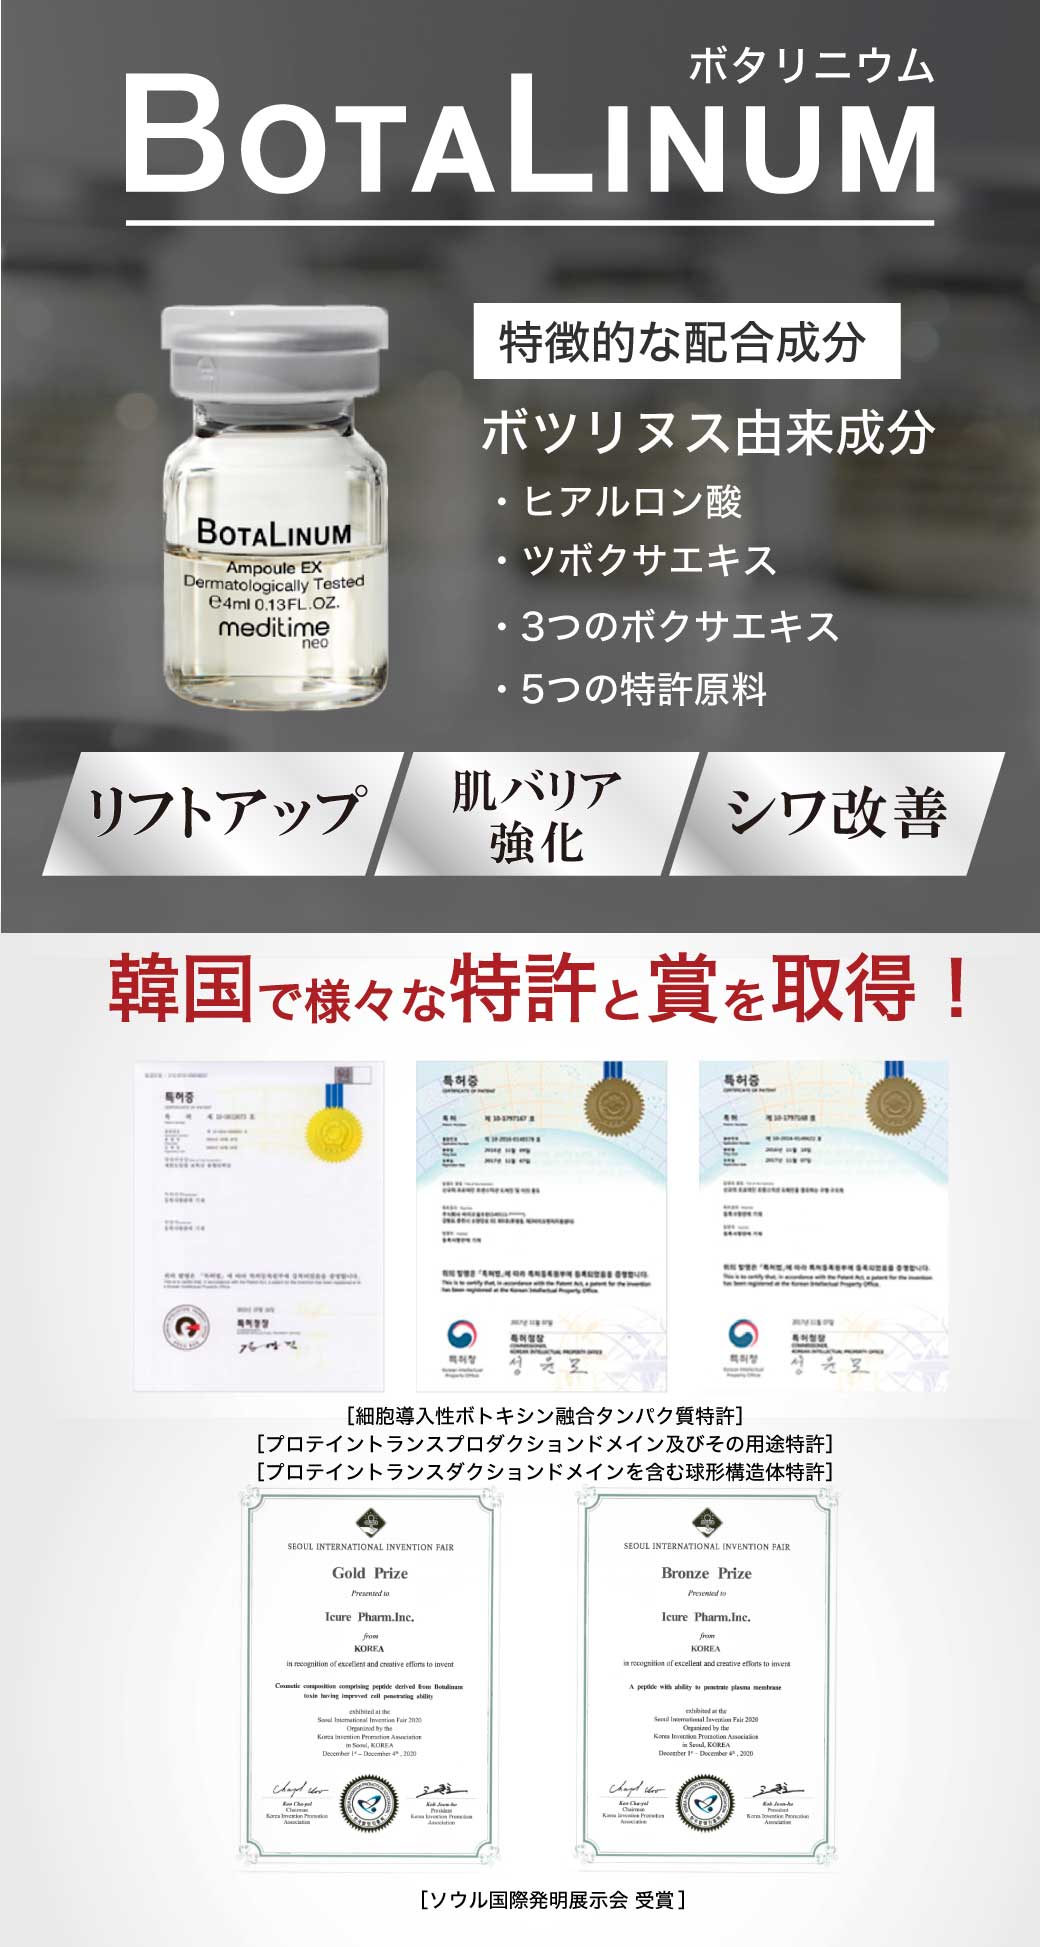 税込 BOTALINUM ボタリニウム 韓国発美容液とクリーム agapeeurope.org